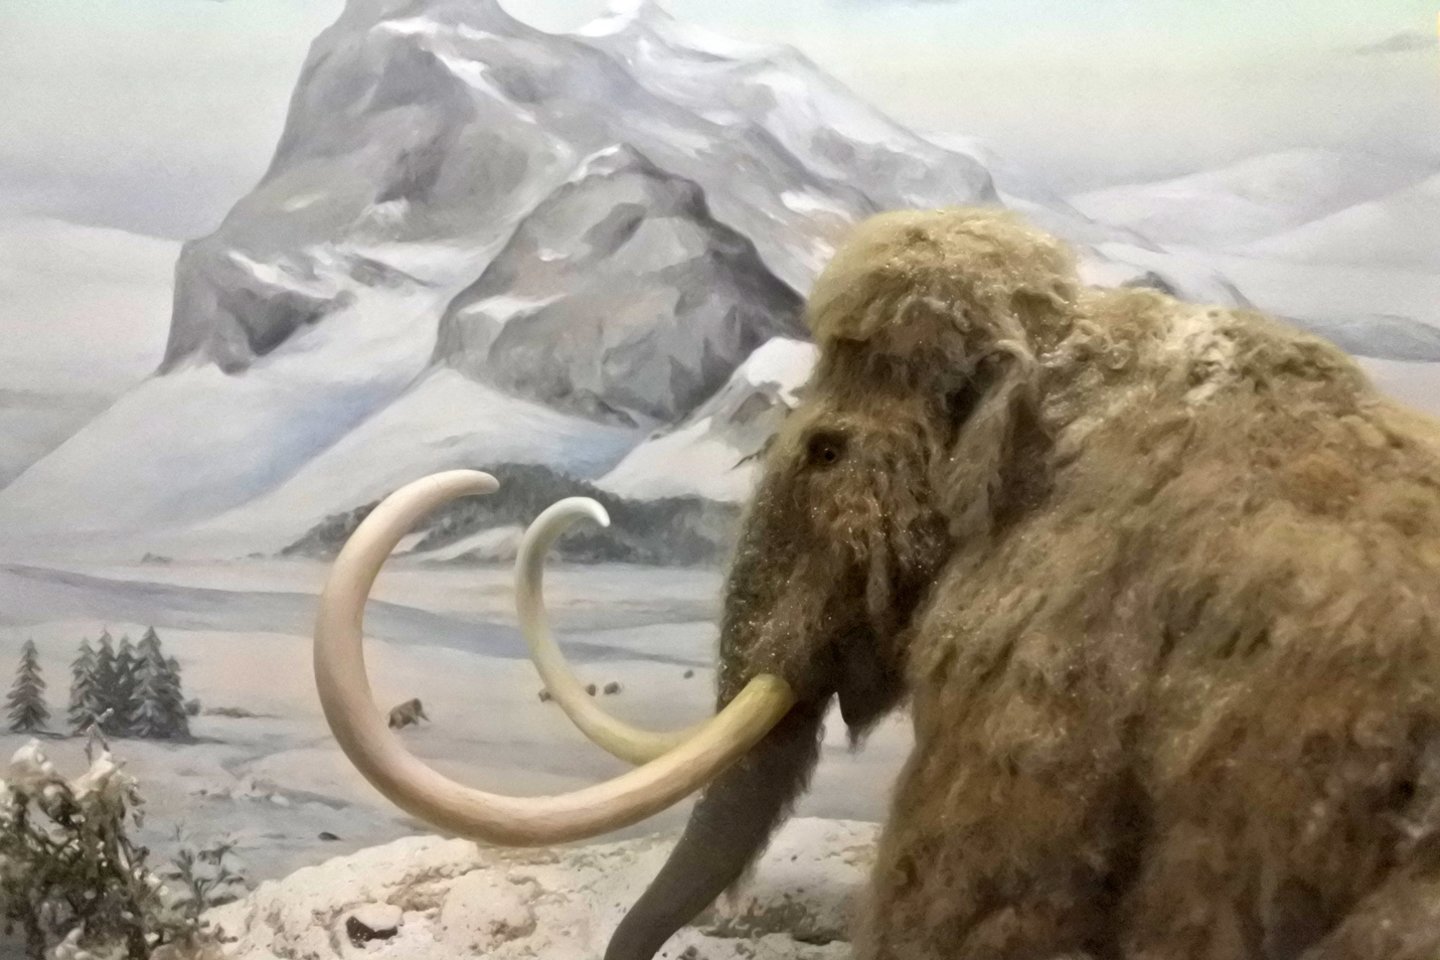  Sibiro amžinajame įšale ilgiau kaip milijoną metų glūdėjusiose mamutų liekanose rasta seniausių iki šiol aptiktų DNR pavyzdžių, kurių sekas mokslininkams pavyko nuskaityti.<br> 123rf iliustr.